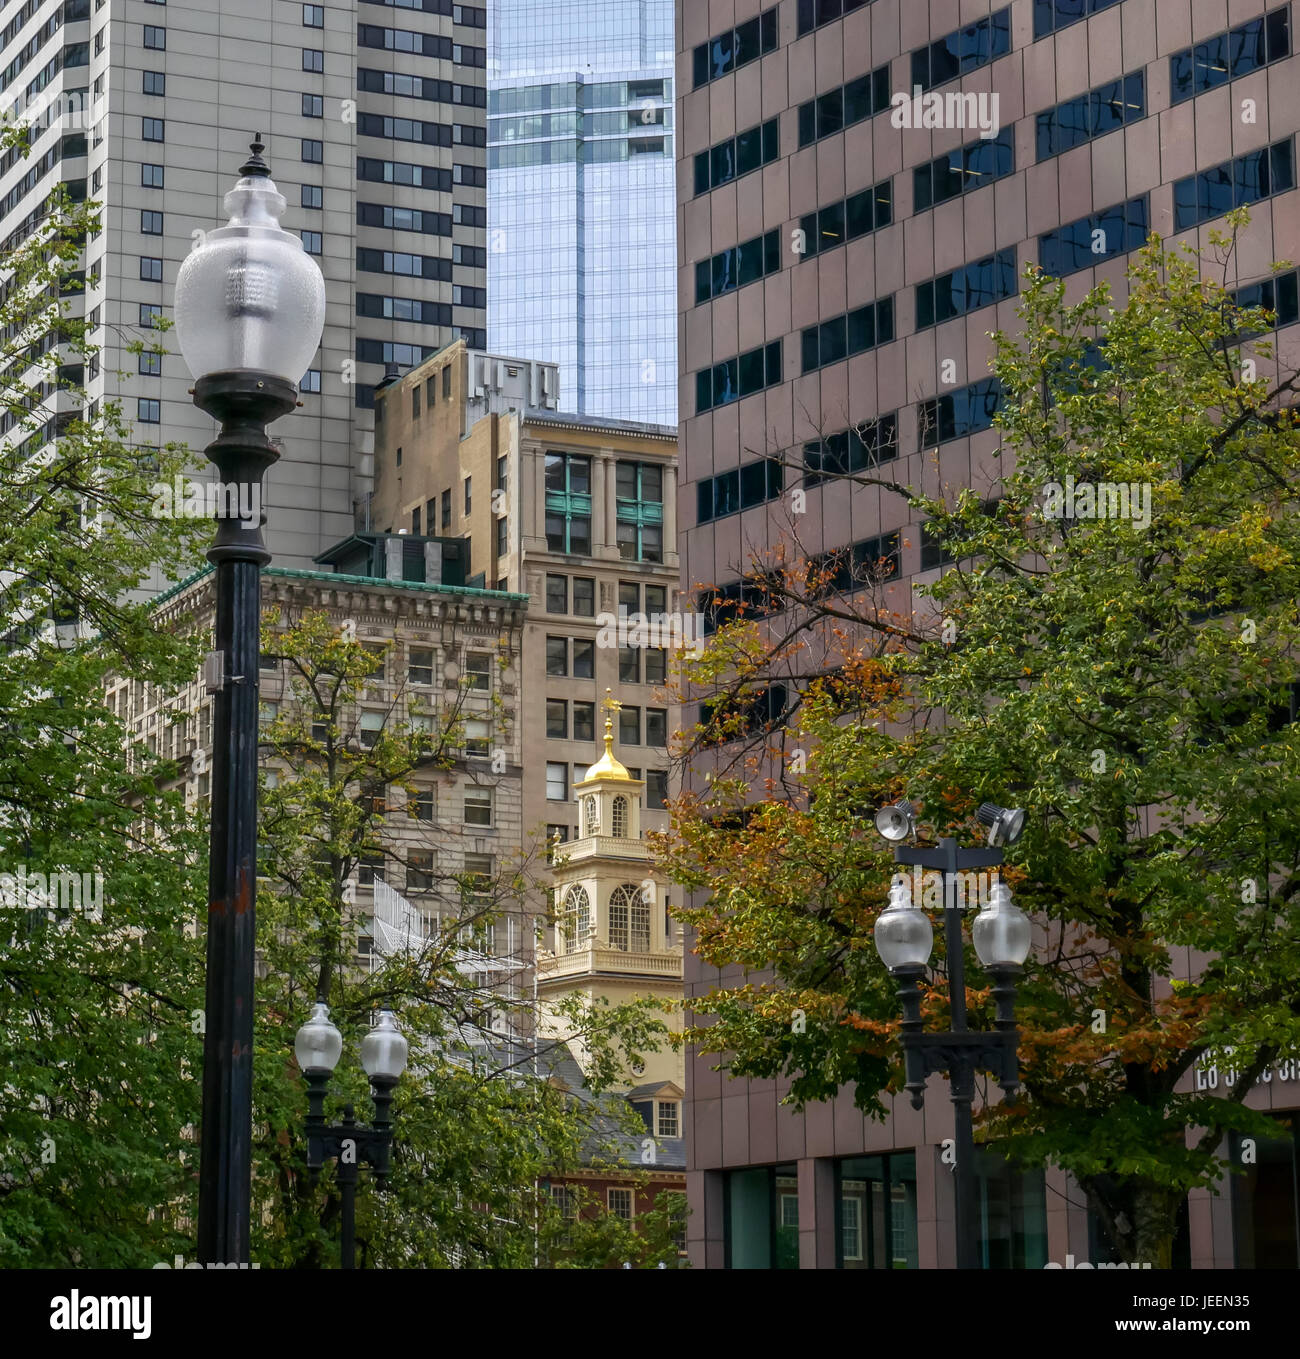 Blick auf den Turm der Old State House, Boston, Massachusetts, USA, zwischen modernen Bürogebäuden sandwiched Stockfoto